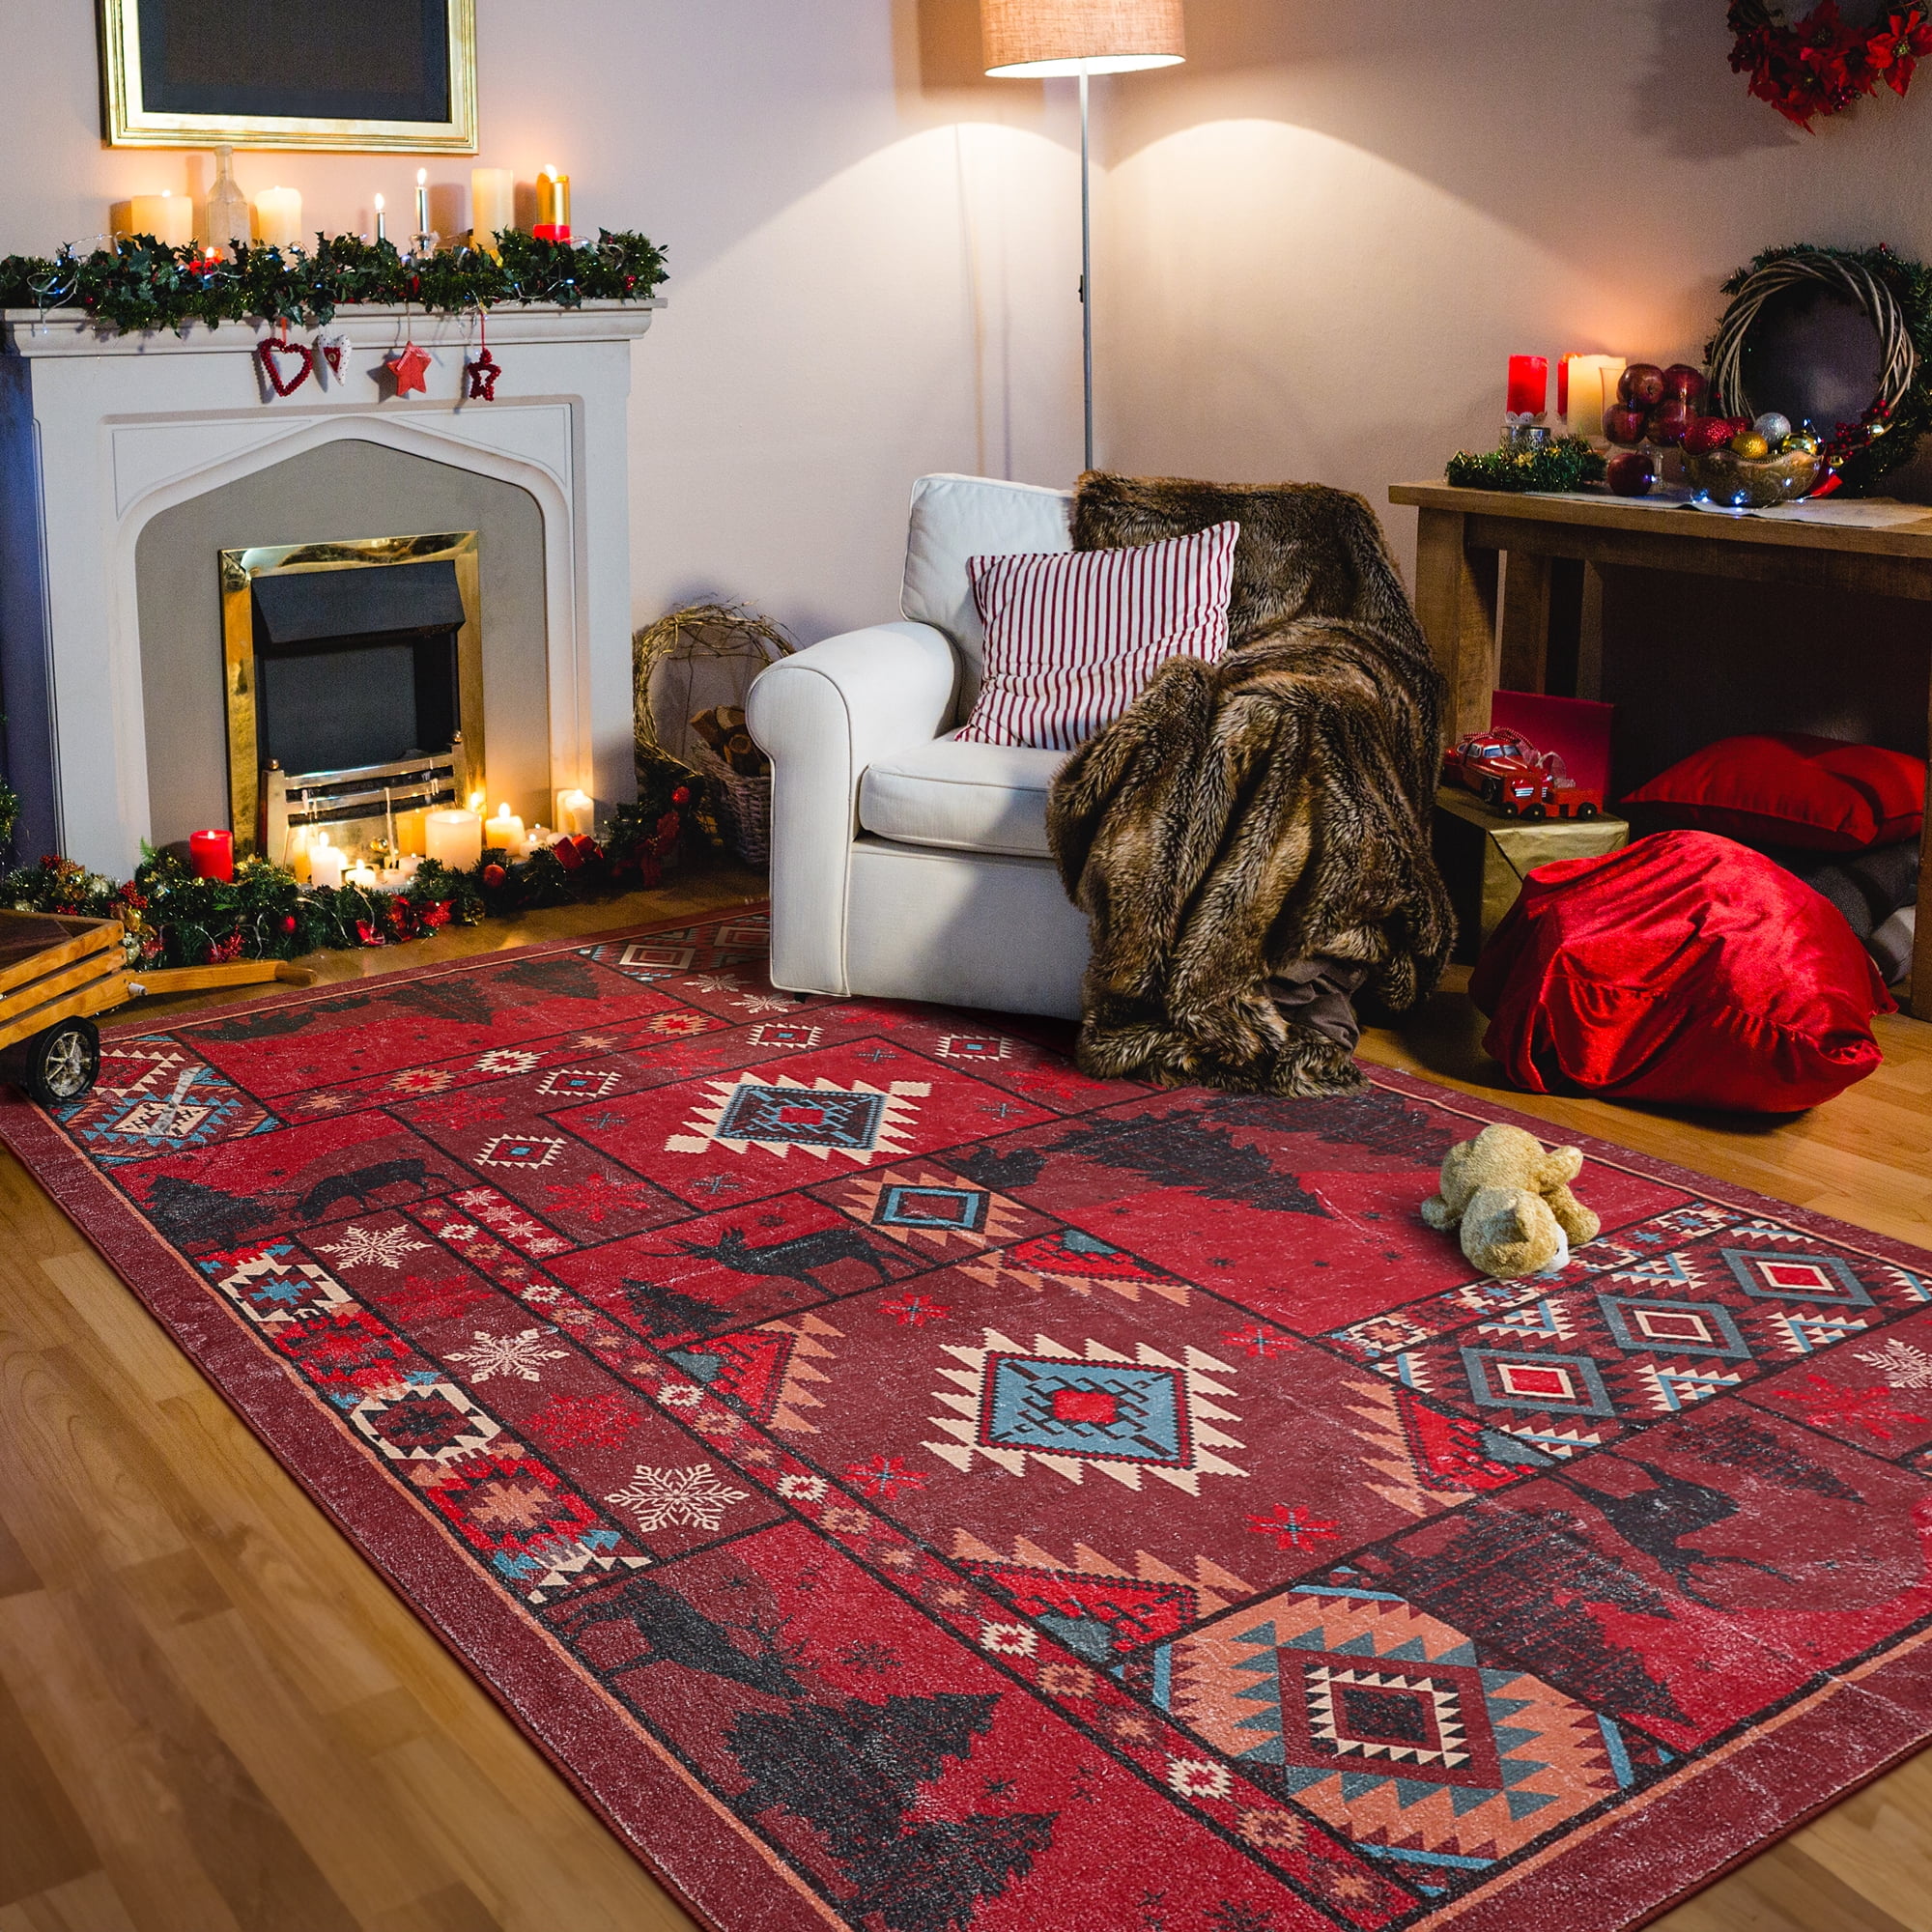 Wisdom Monkeys Supreme Area Rug Living Room Rug Christmas Gift US Decor -  Peto Rugs